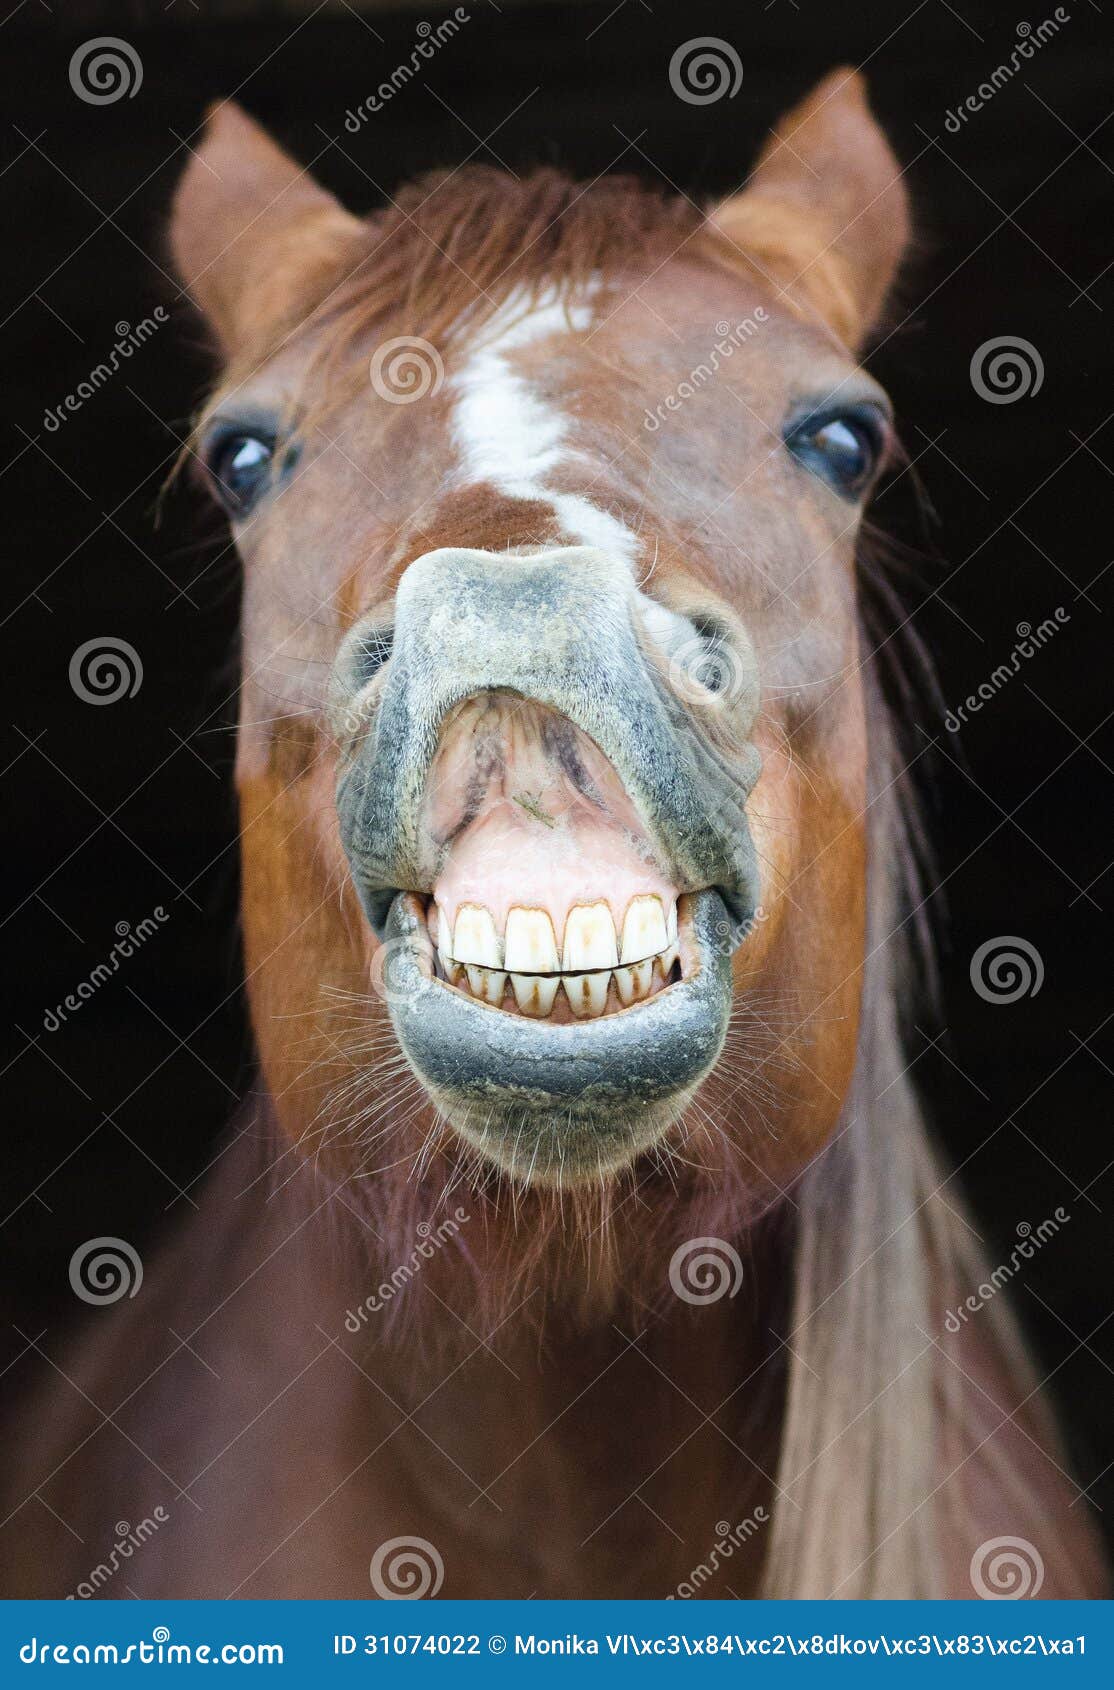 Bravet - O riso de um Cavalo 🐴 Você já deve ter visto a foto de